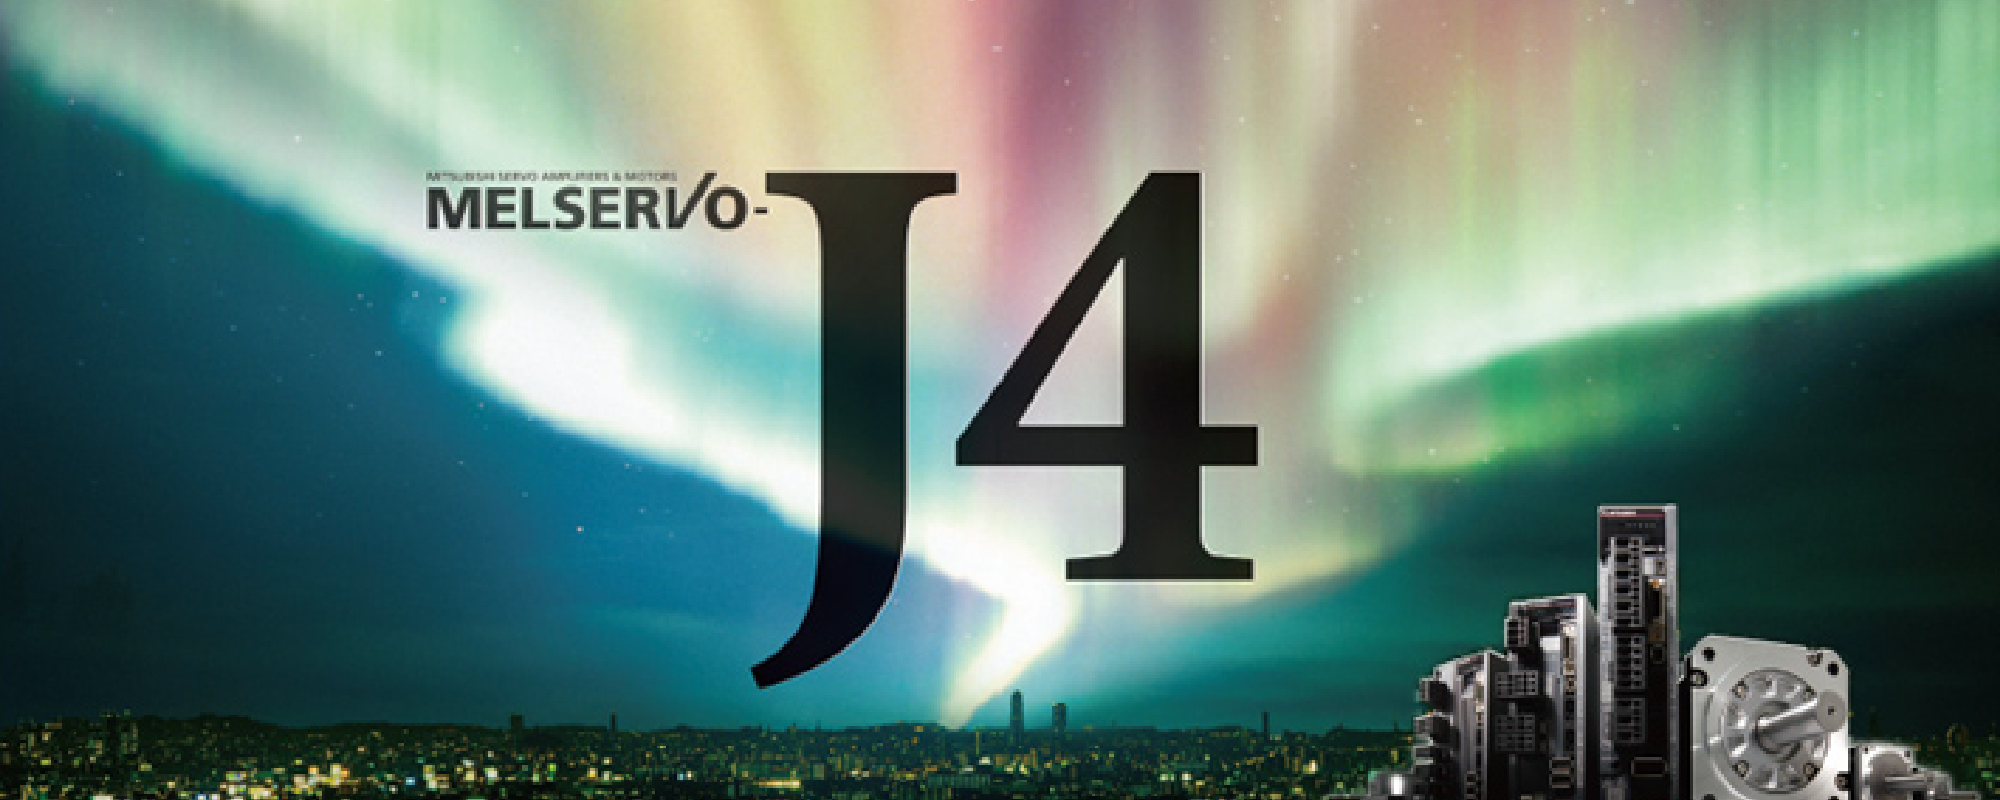 MELSERVO-J4